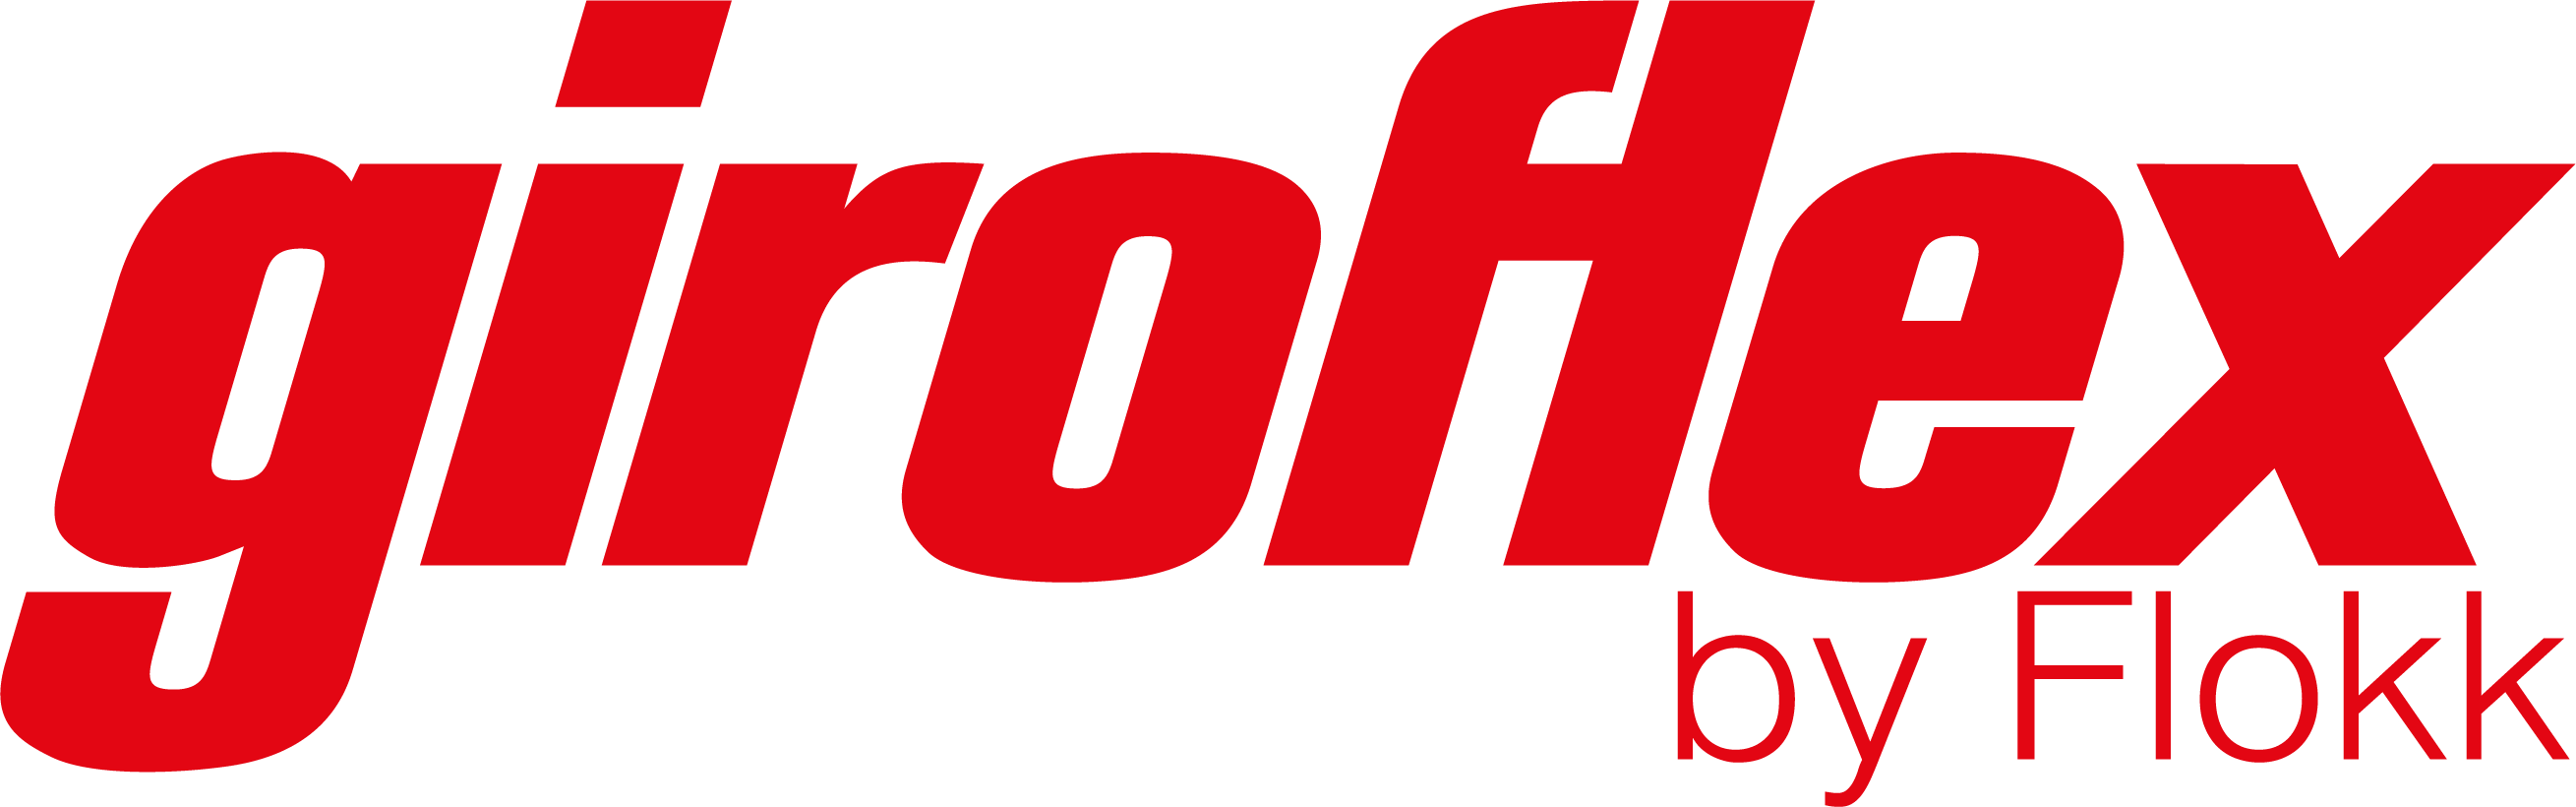 Giroflex by flokk_logo[1338]